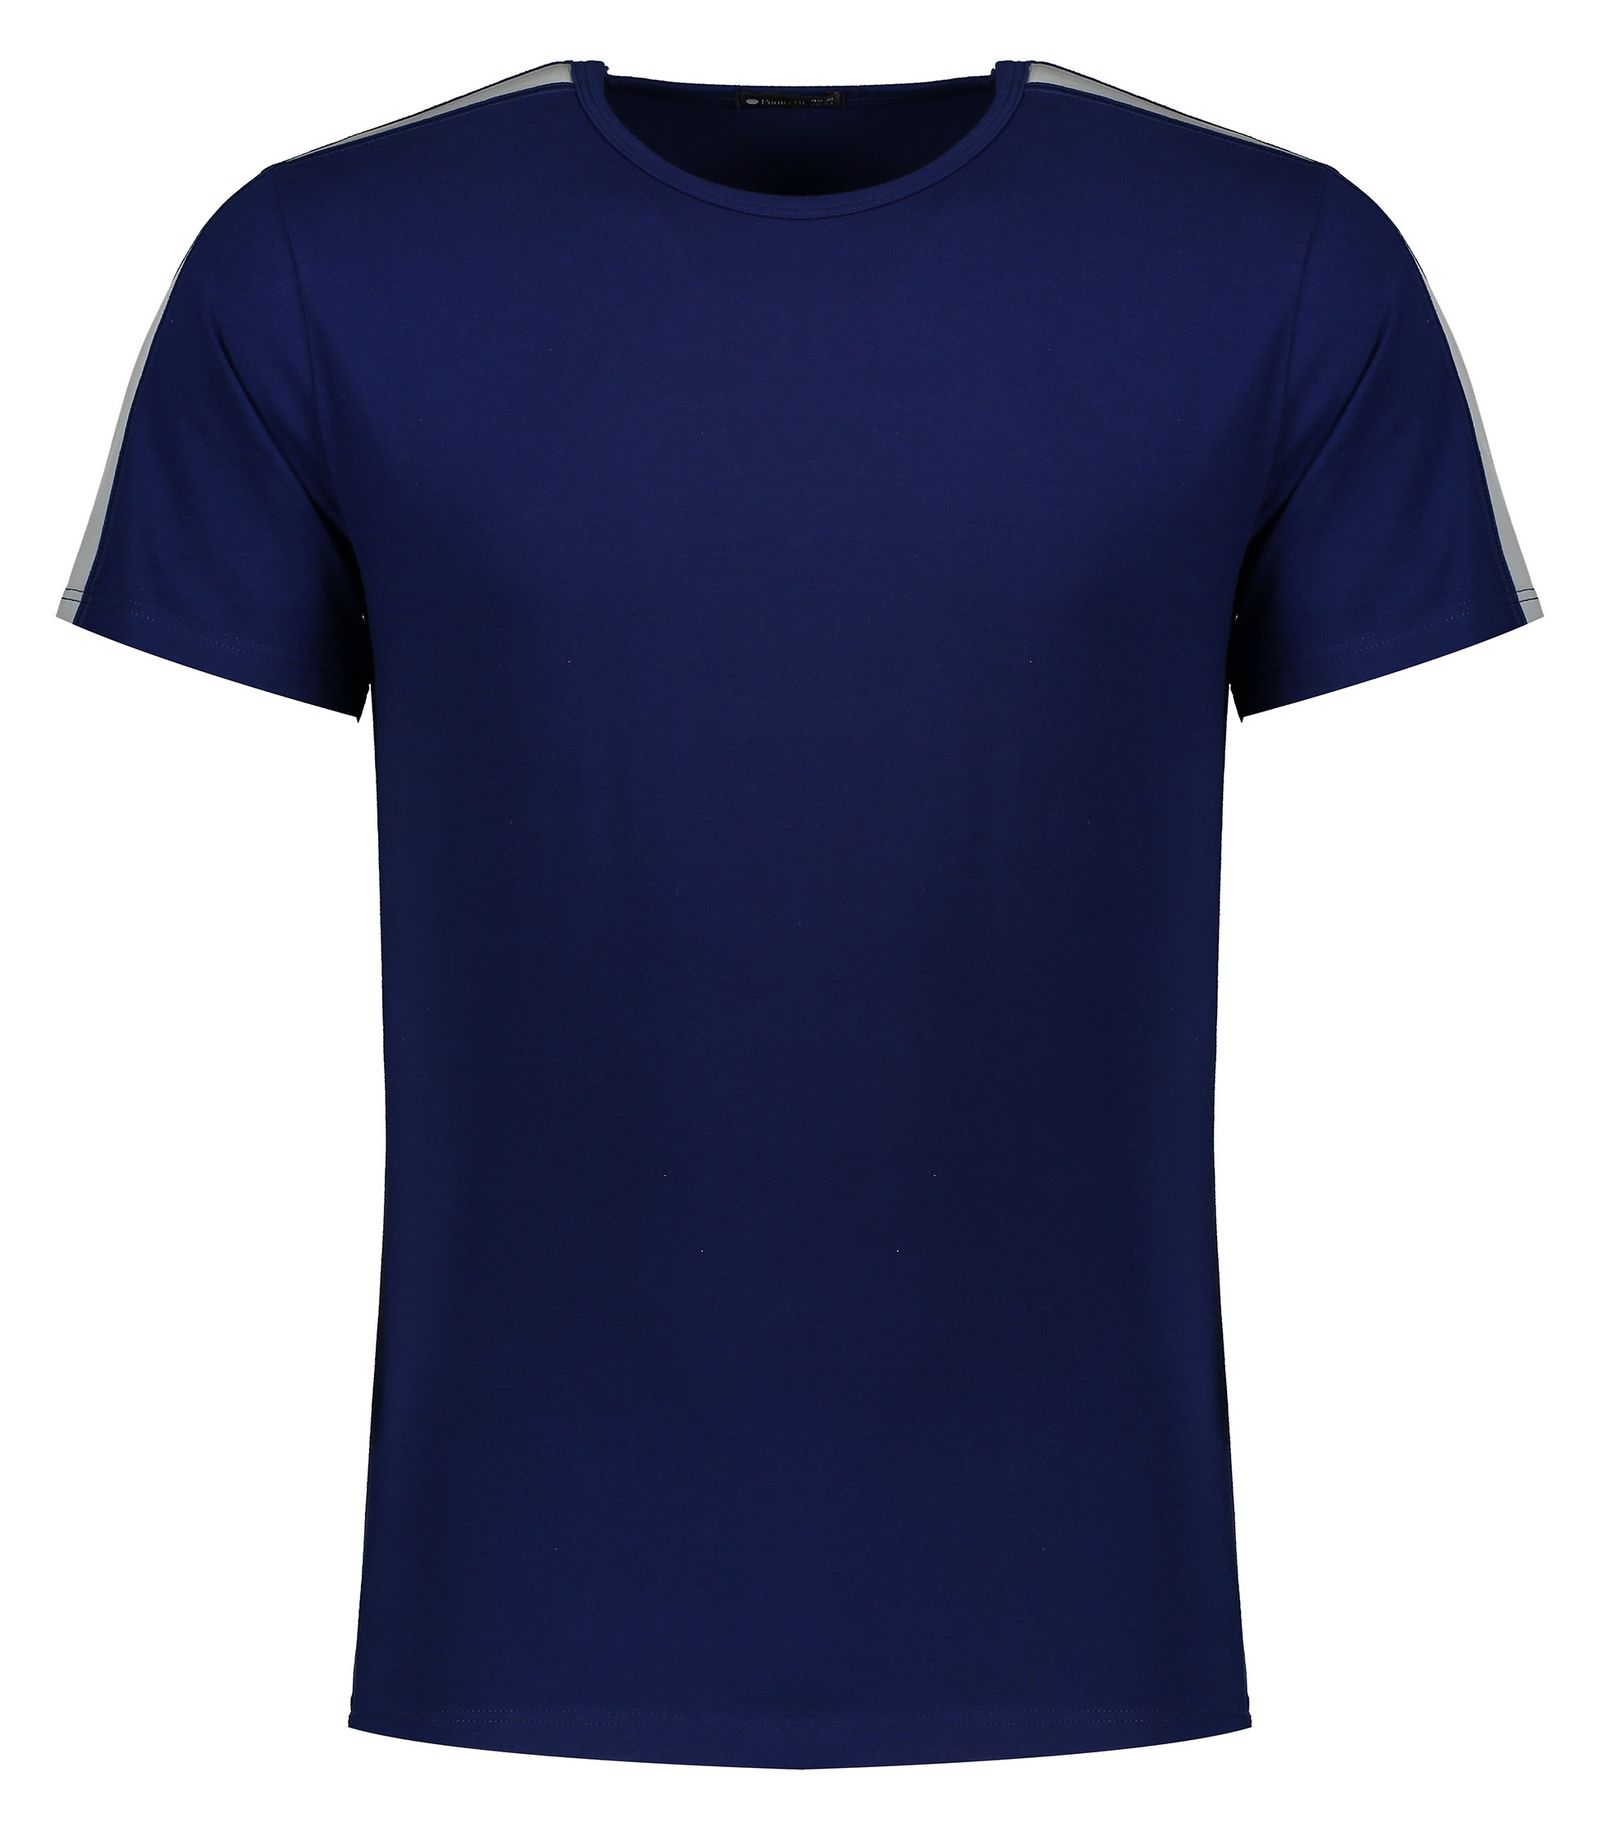 تی شرت مردانه پونتو بلانکو کد 33267-20-148